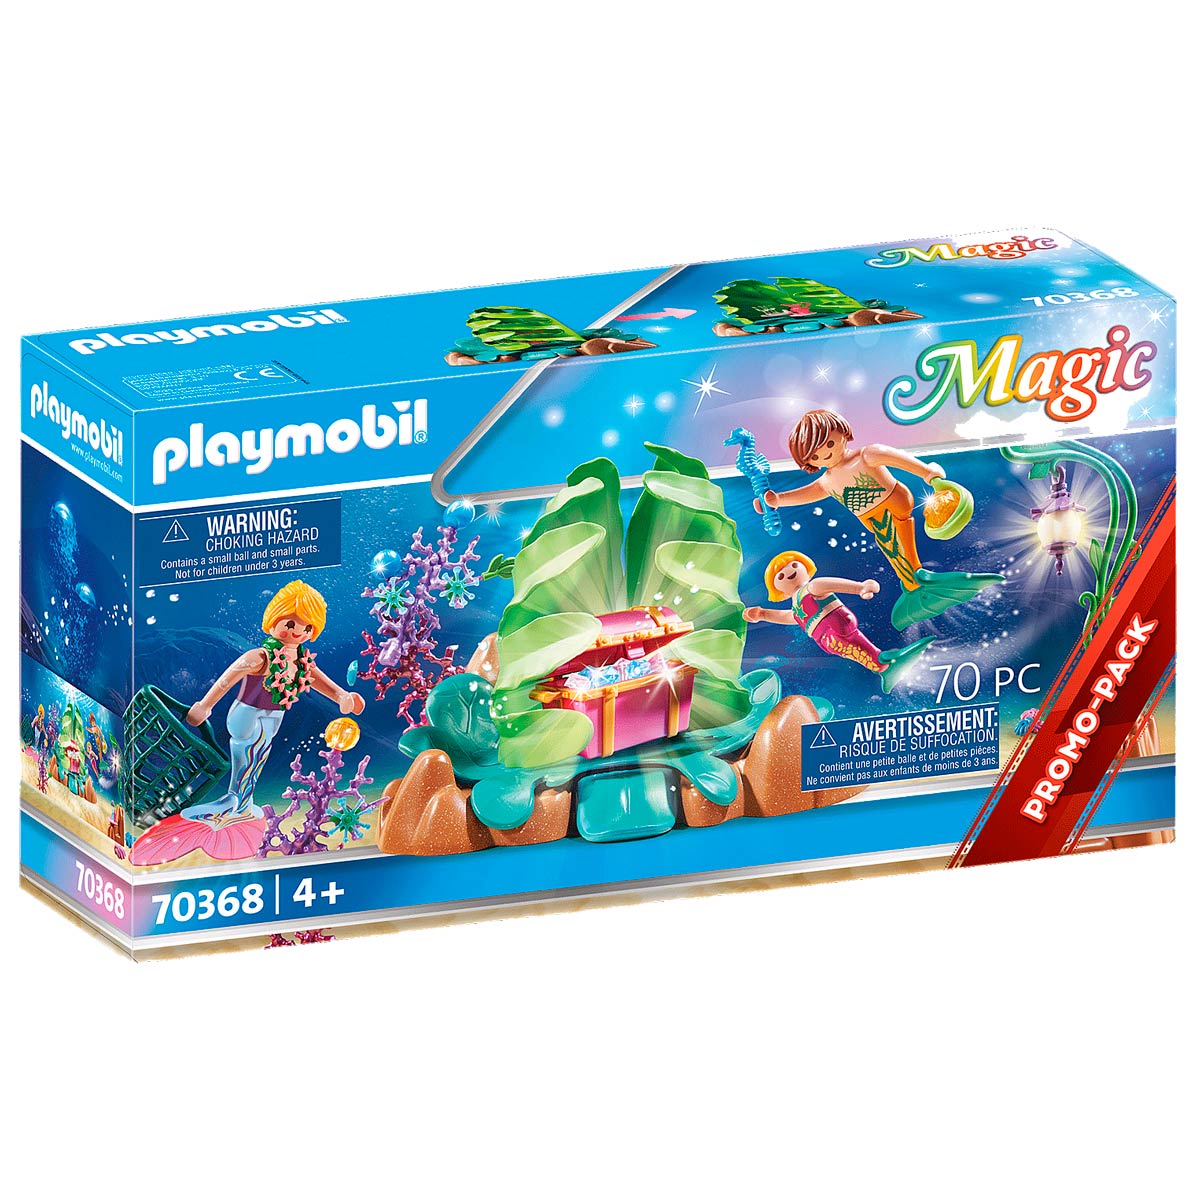 Seguir espíritu por favor no lo hagas Playmobil Magic Salón Coral de Sirenas